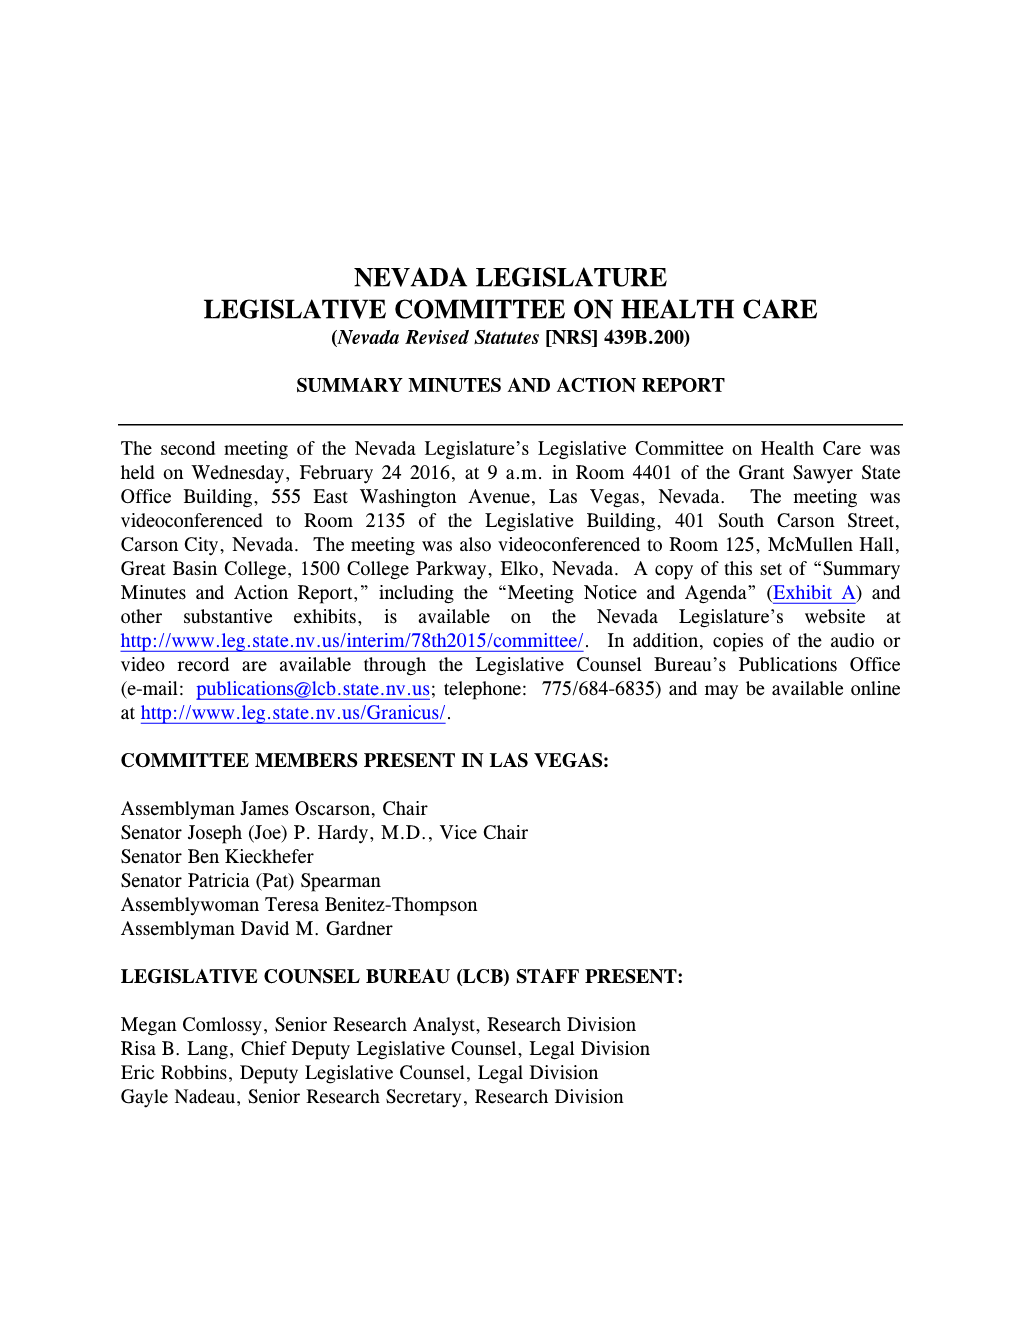 NEVADA LEGISLATURE LEGISLATIVE COMMITTEE on HEALTH CARE (Nevada Revised Statutes [NRS] 439B.200)